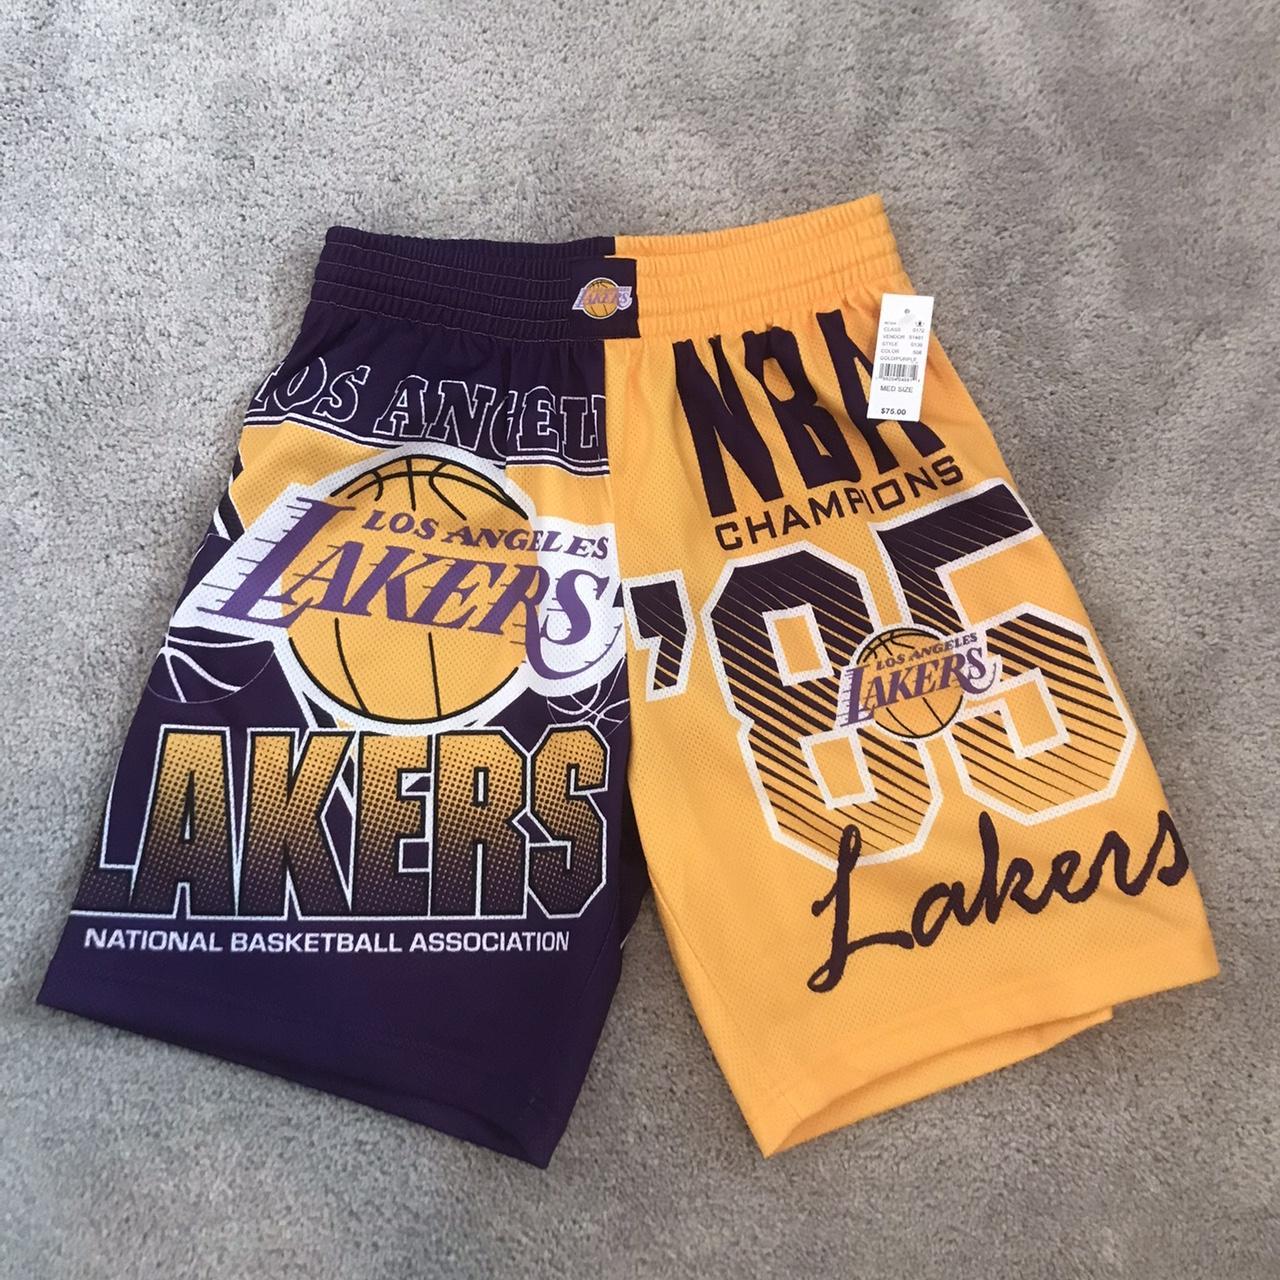 Los Angeles Lakers Basketball Black Just Don Shorts